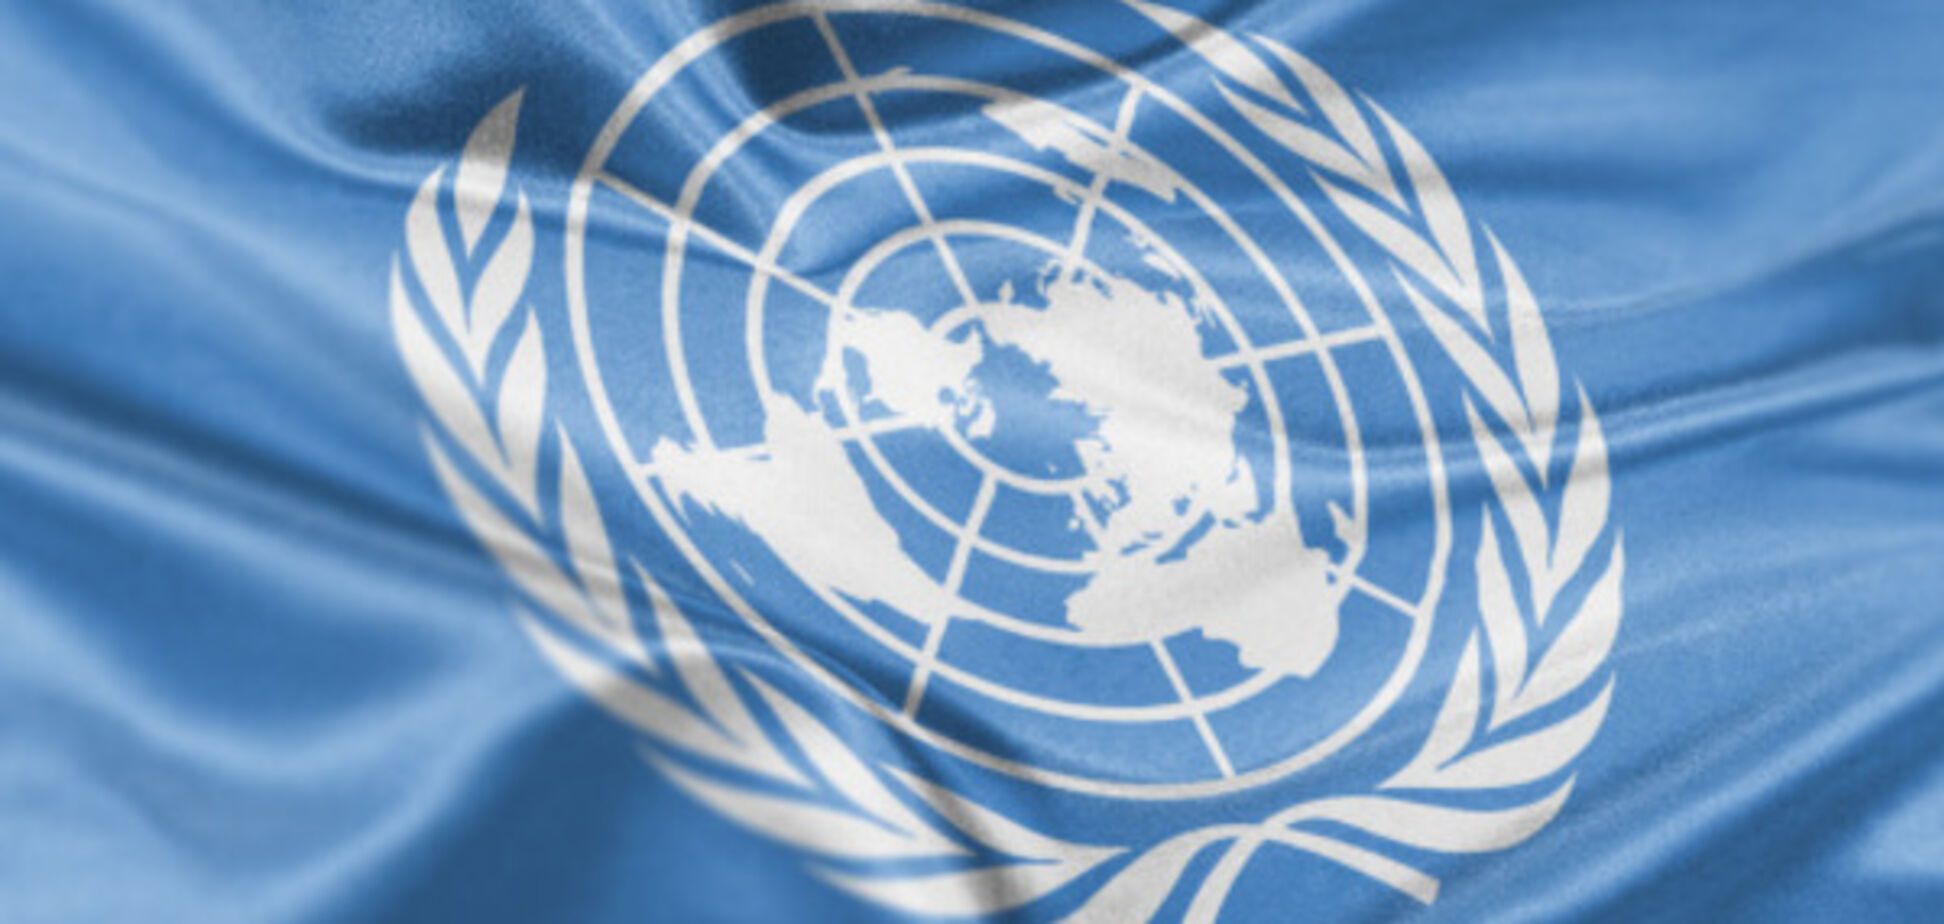 Рейтинг развития стран ООН: Украина оказалась ниже России, Беларуси и Казахстана